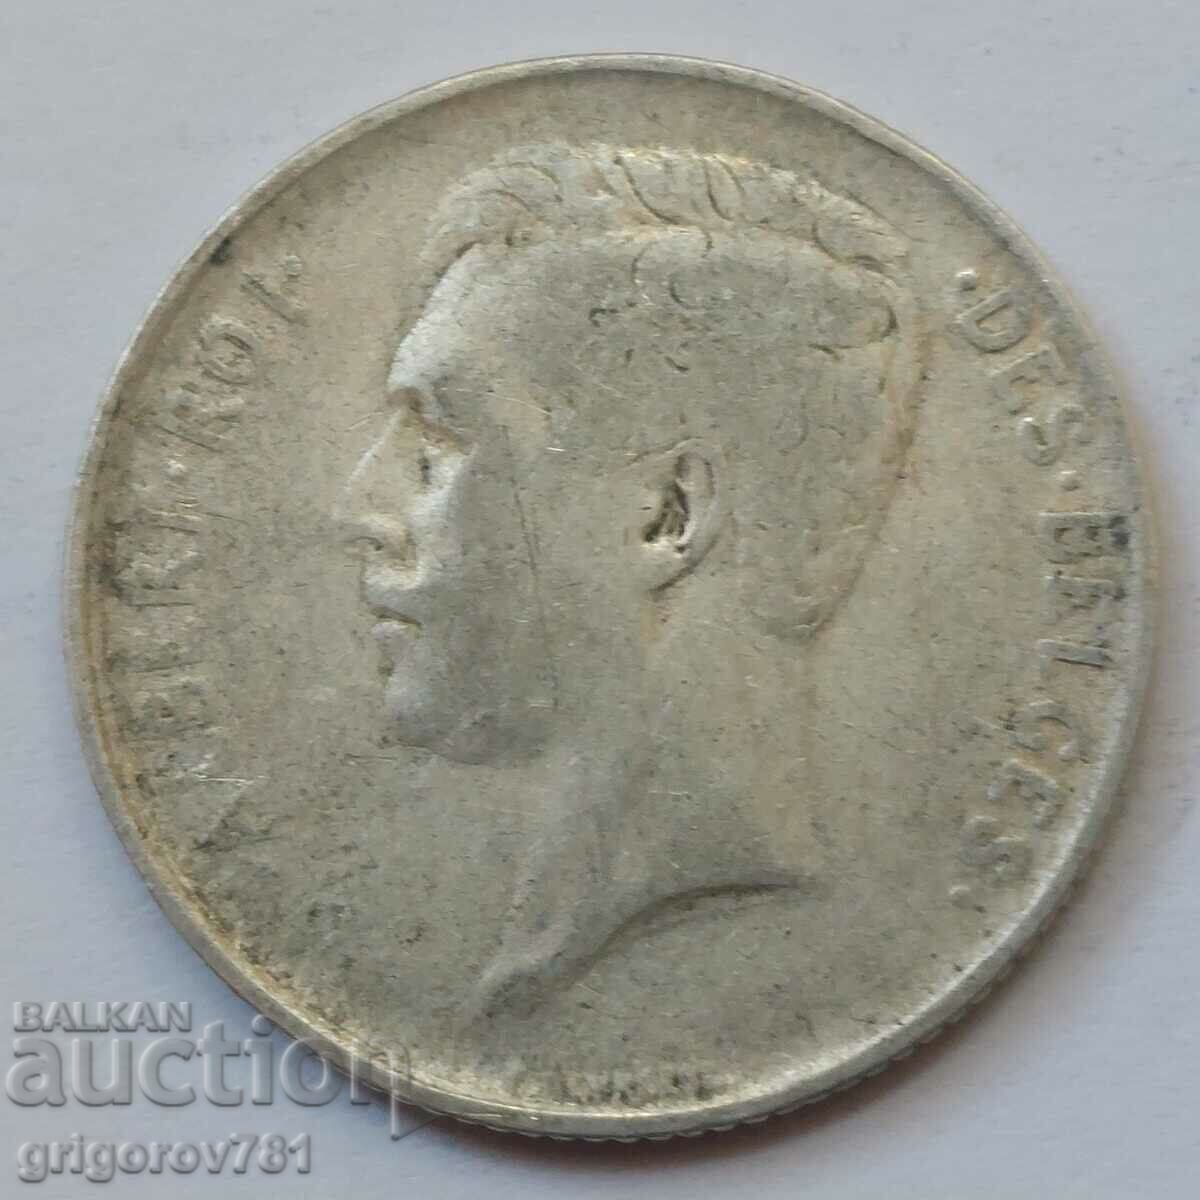 1 franc silver Belgium 1913 - silver coin #66